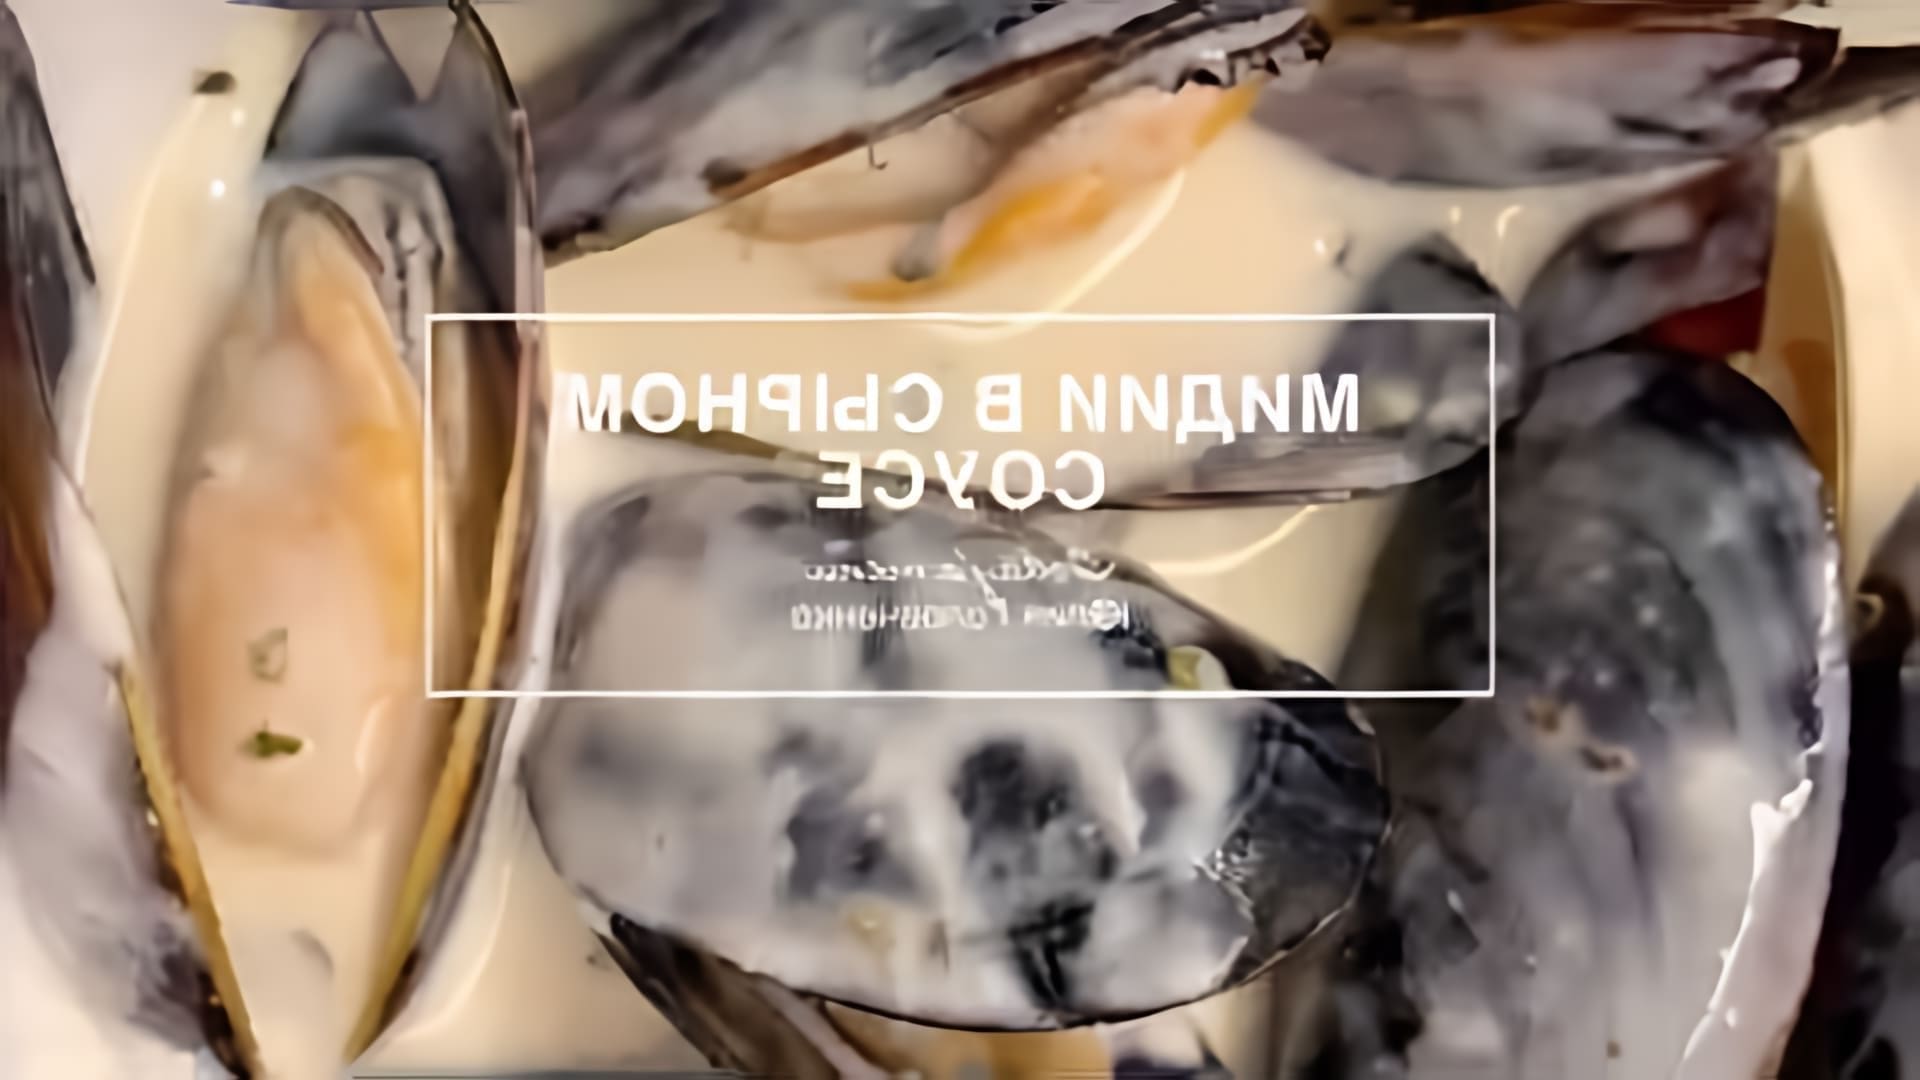 Рецепт мидий в сырном соусе - это видео-ролик, который показывает, как приготовить вкусное и питательное блюдо из мидий